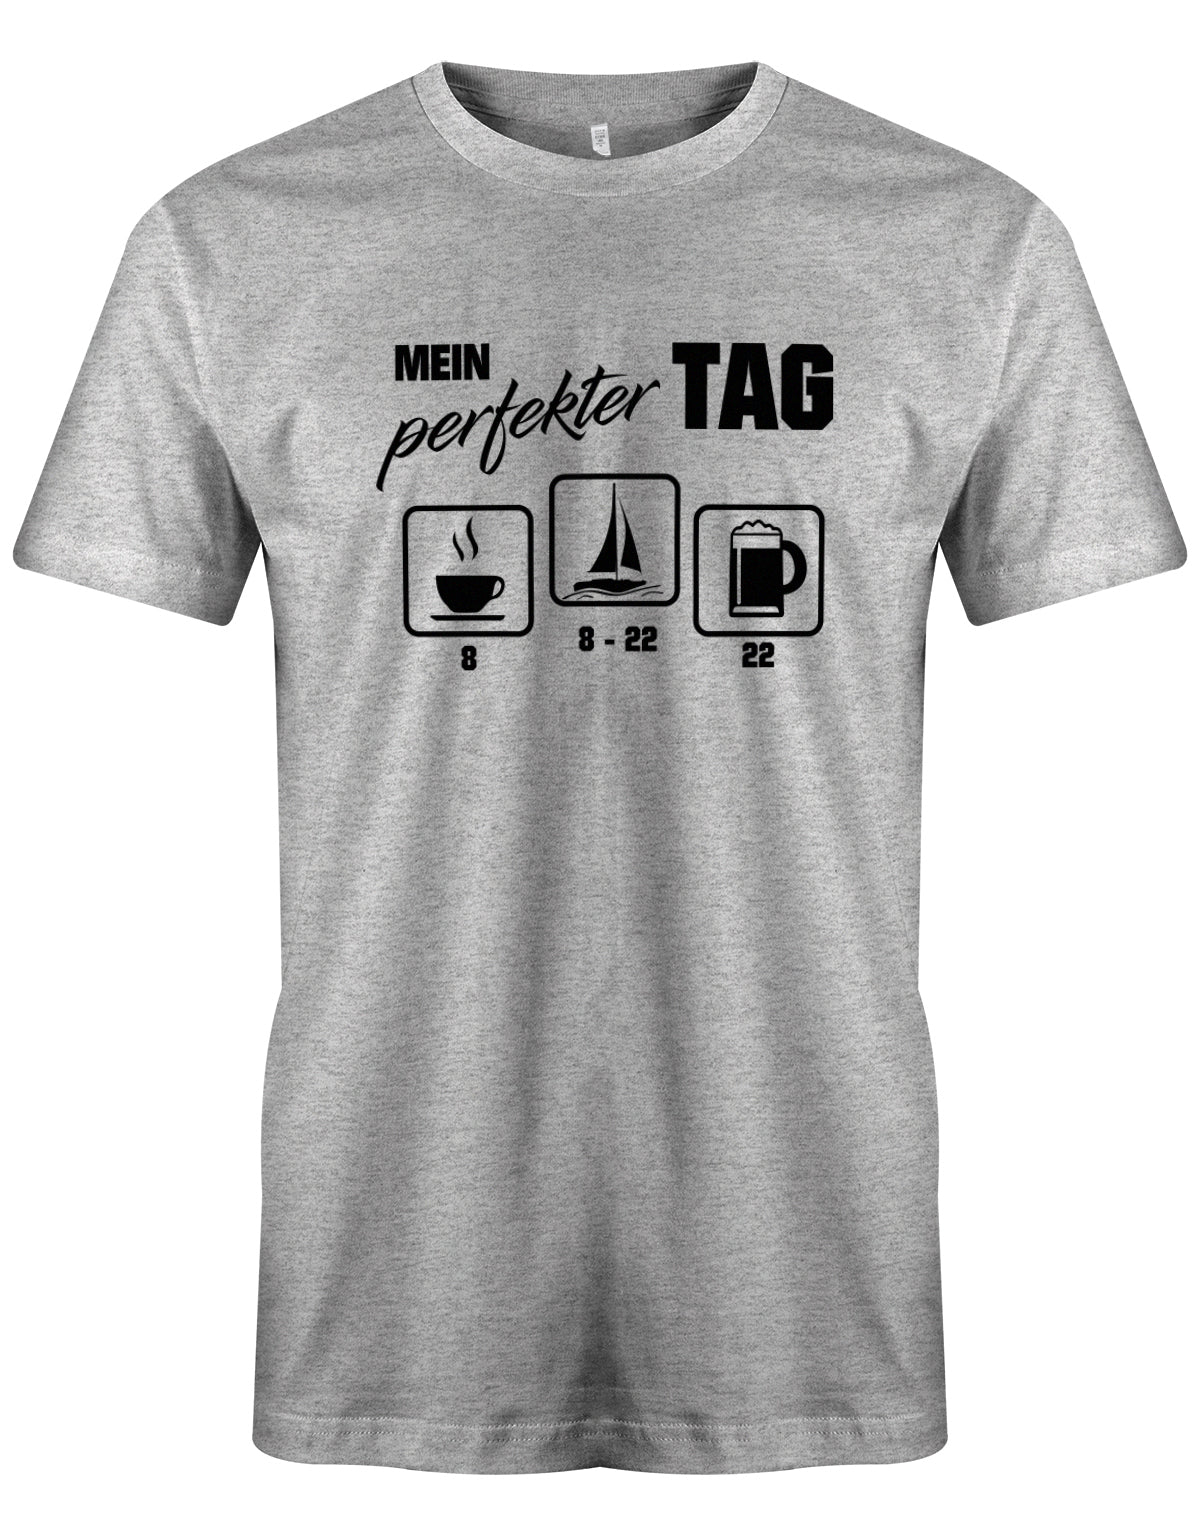 Das lustige Segler t-shirt bedruckt mit "Mein perfekter Tag - 8 Uhr Kaffee von 8-22 Uhr segeln und 22 Uhr Bier ". Grau